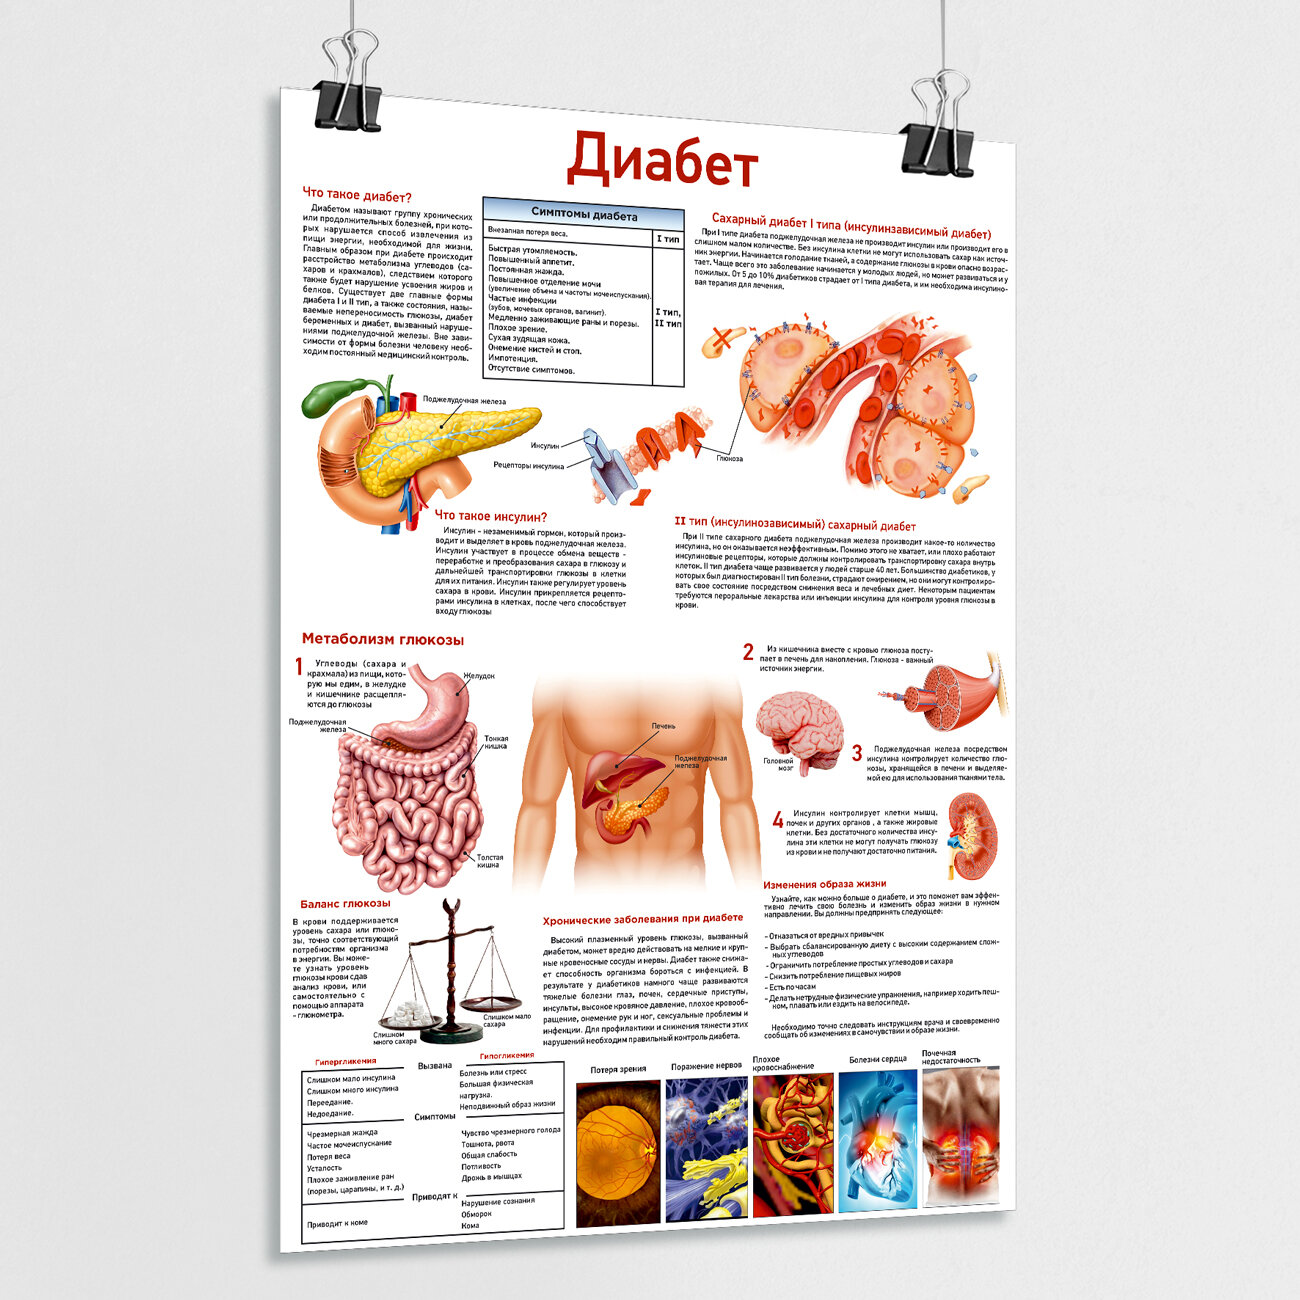 Обучающий медицинский плакат "Диабет" / ламинированный / А-1 (84x60 см.)